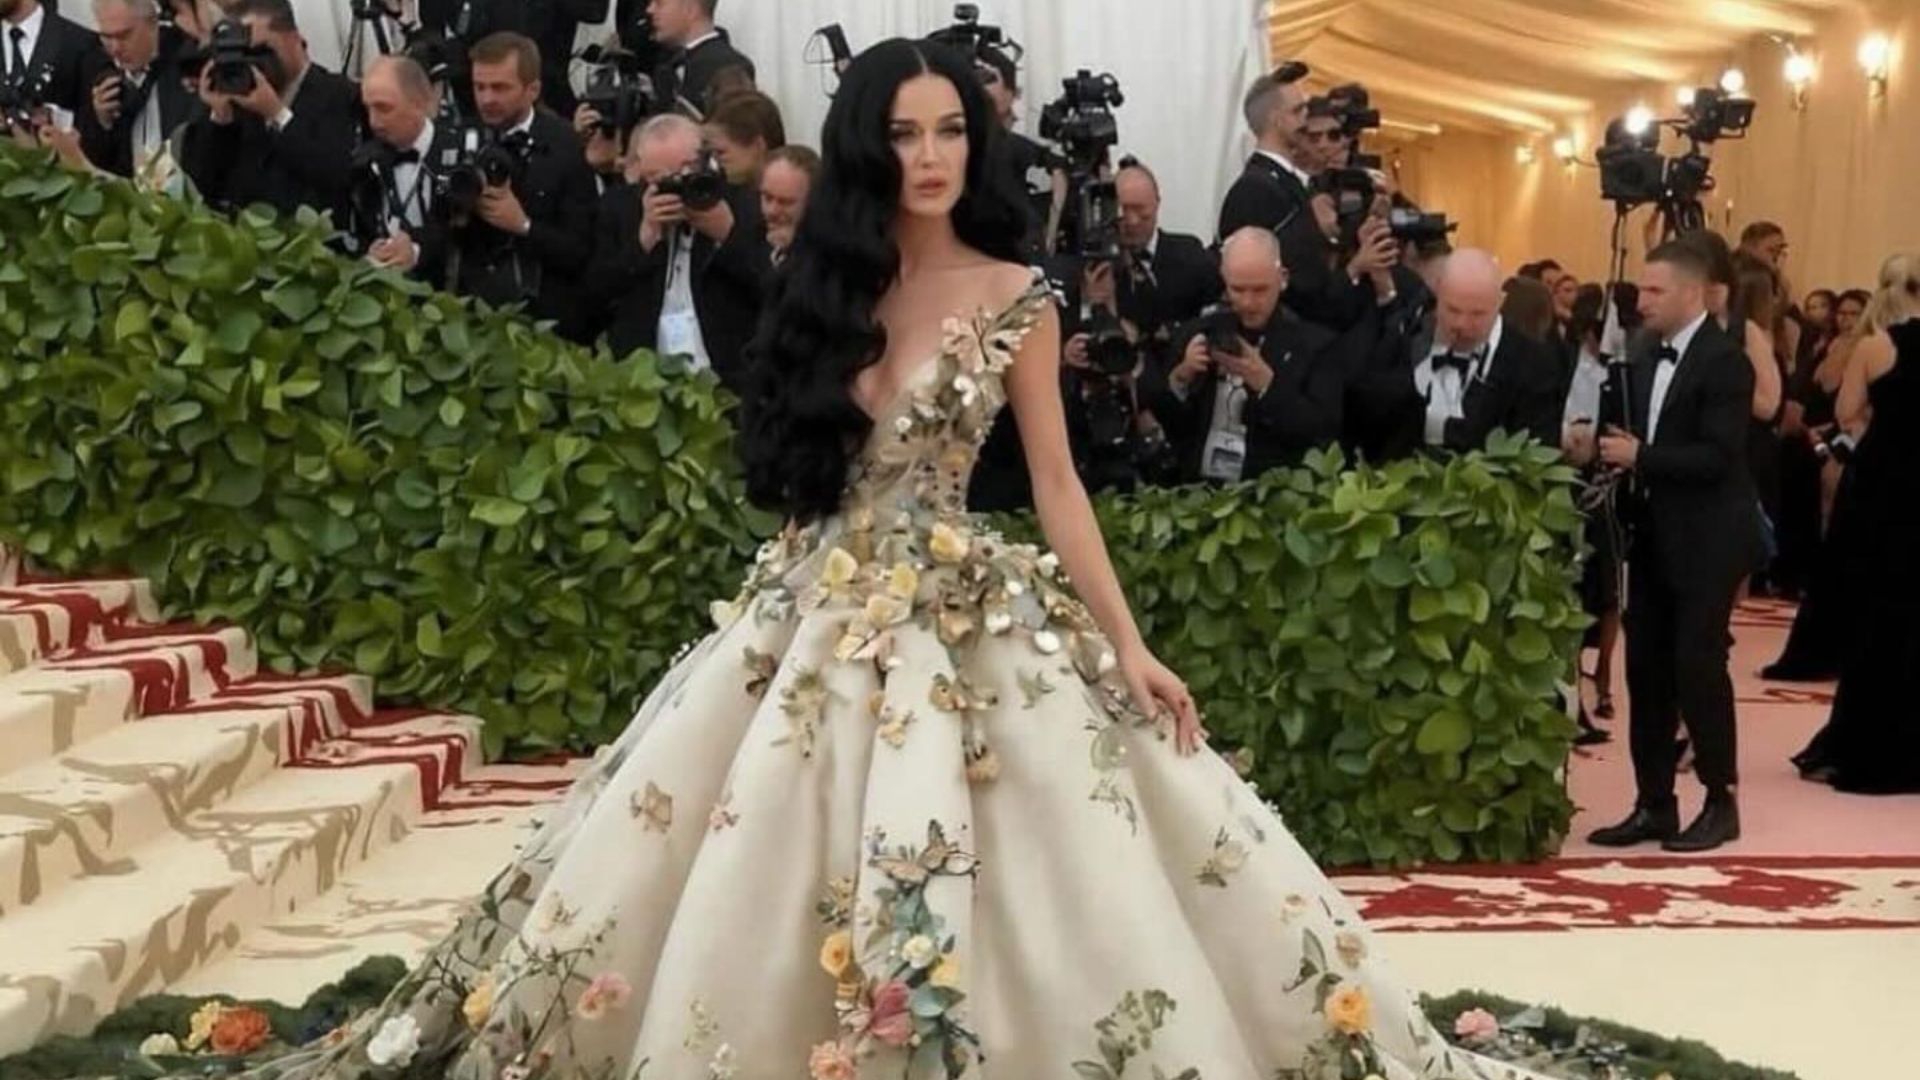 Οι ΑΙ εμφανίσεις της Katy Perry και της Rihanna στο Met Gala έγιναν viral – Μέχρι και η μητέρα της Perry μπερδεύτηκε